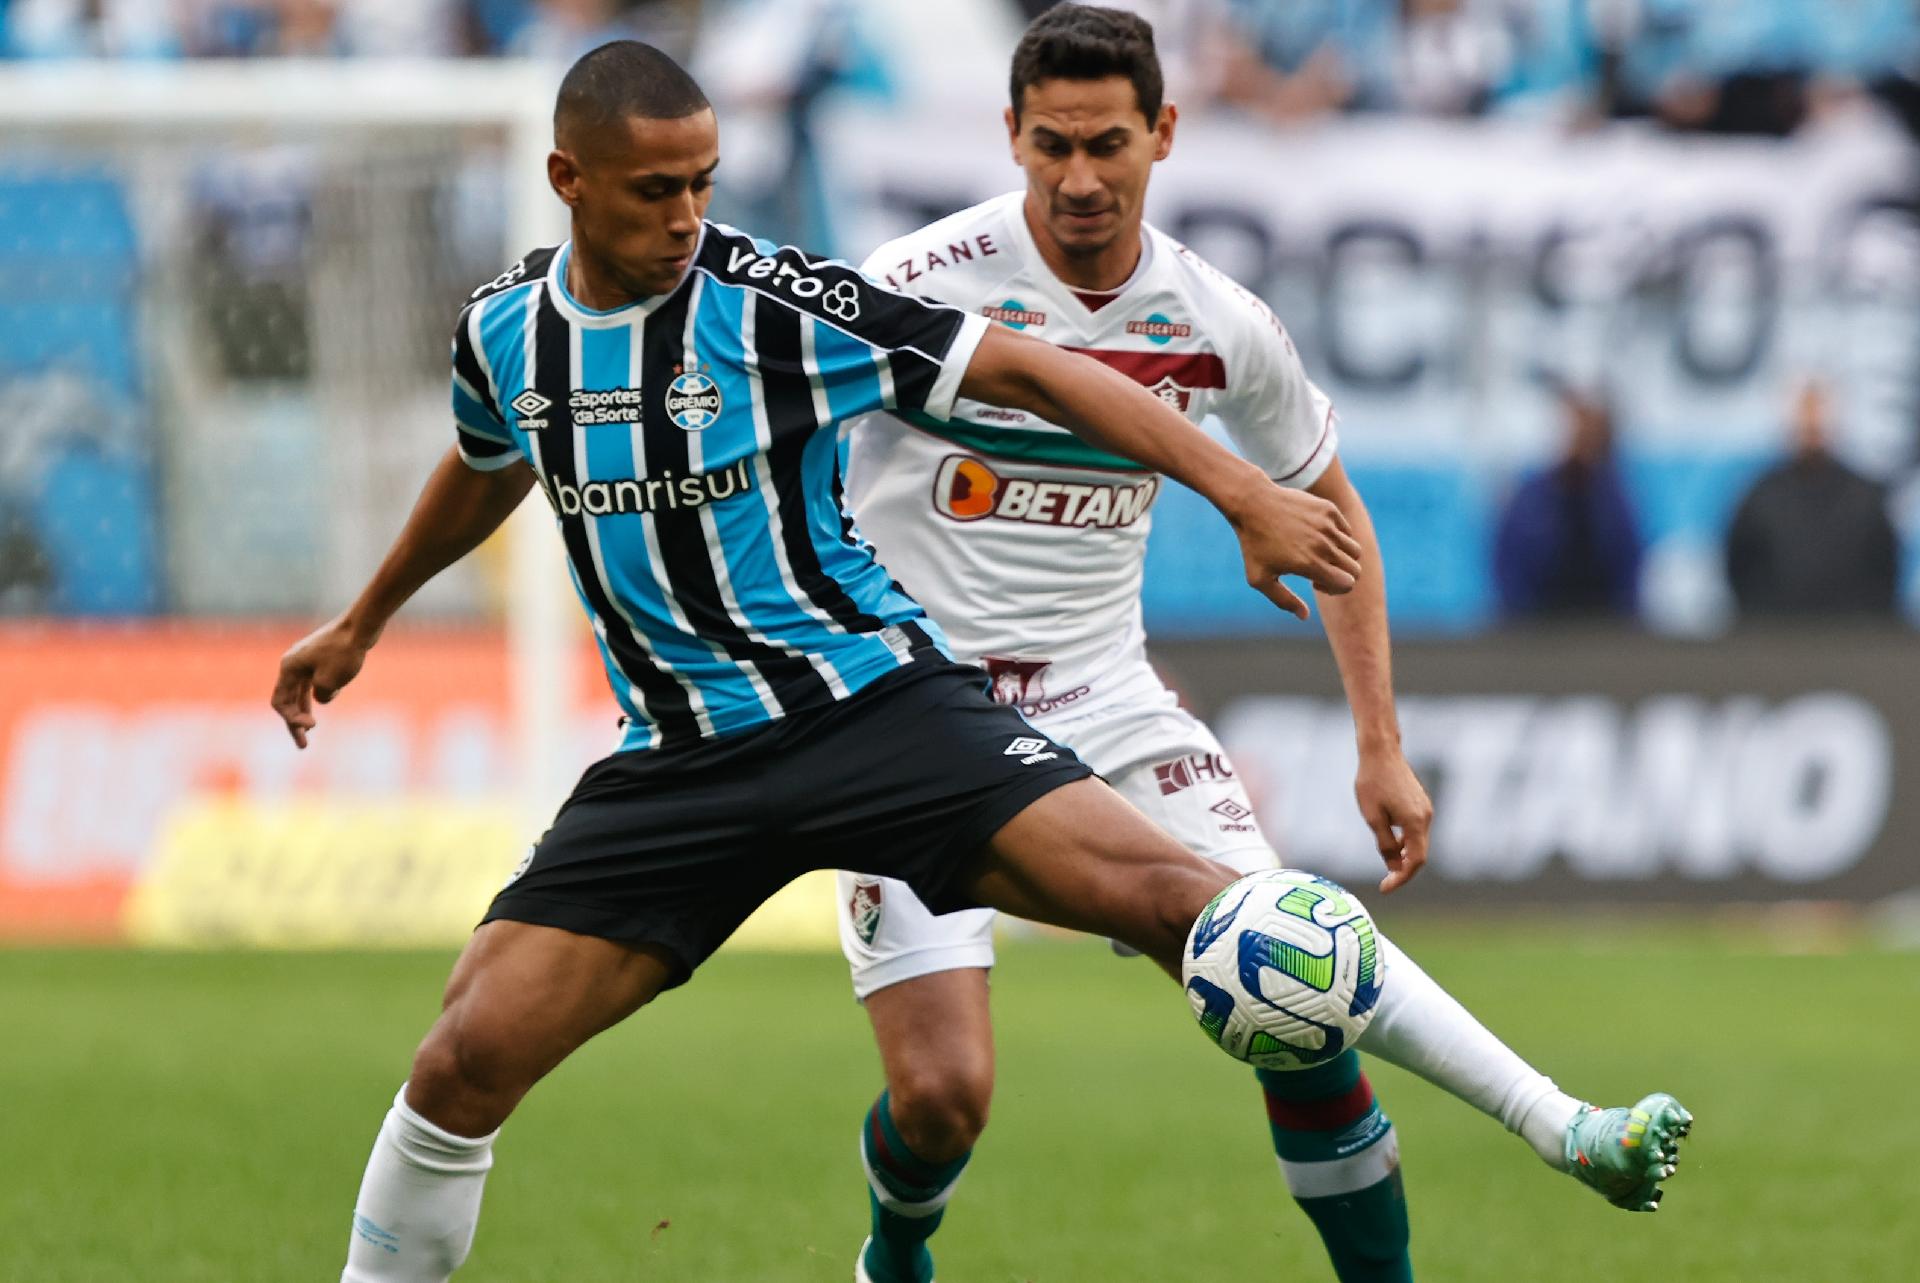 Náutico vs Tombense: A Clash of Titans in the Brazilian Football League